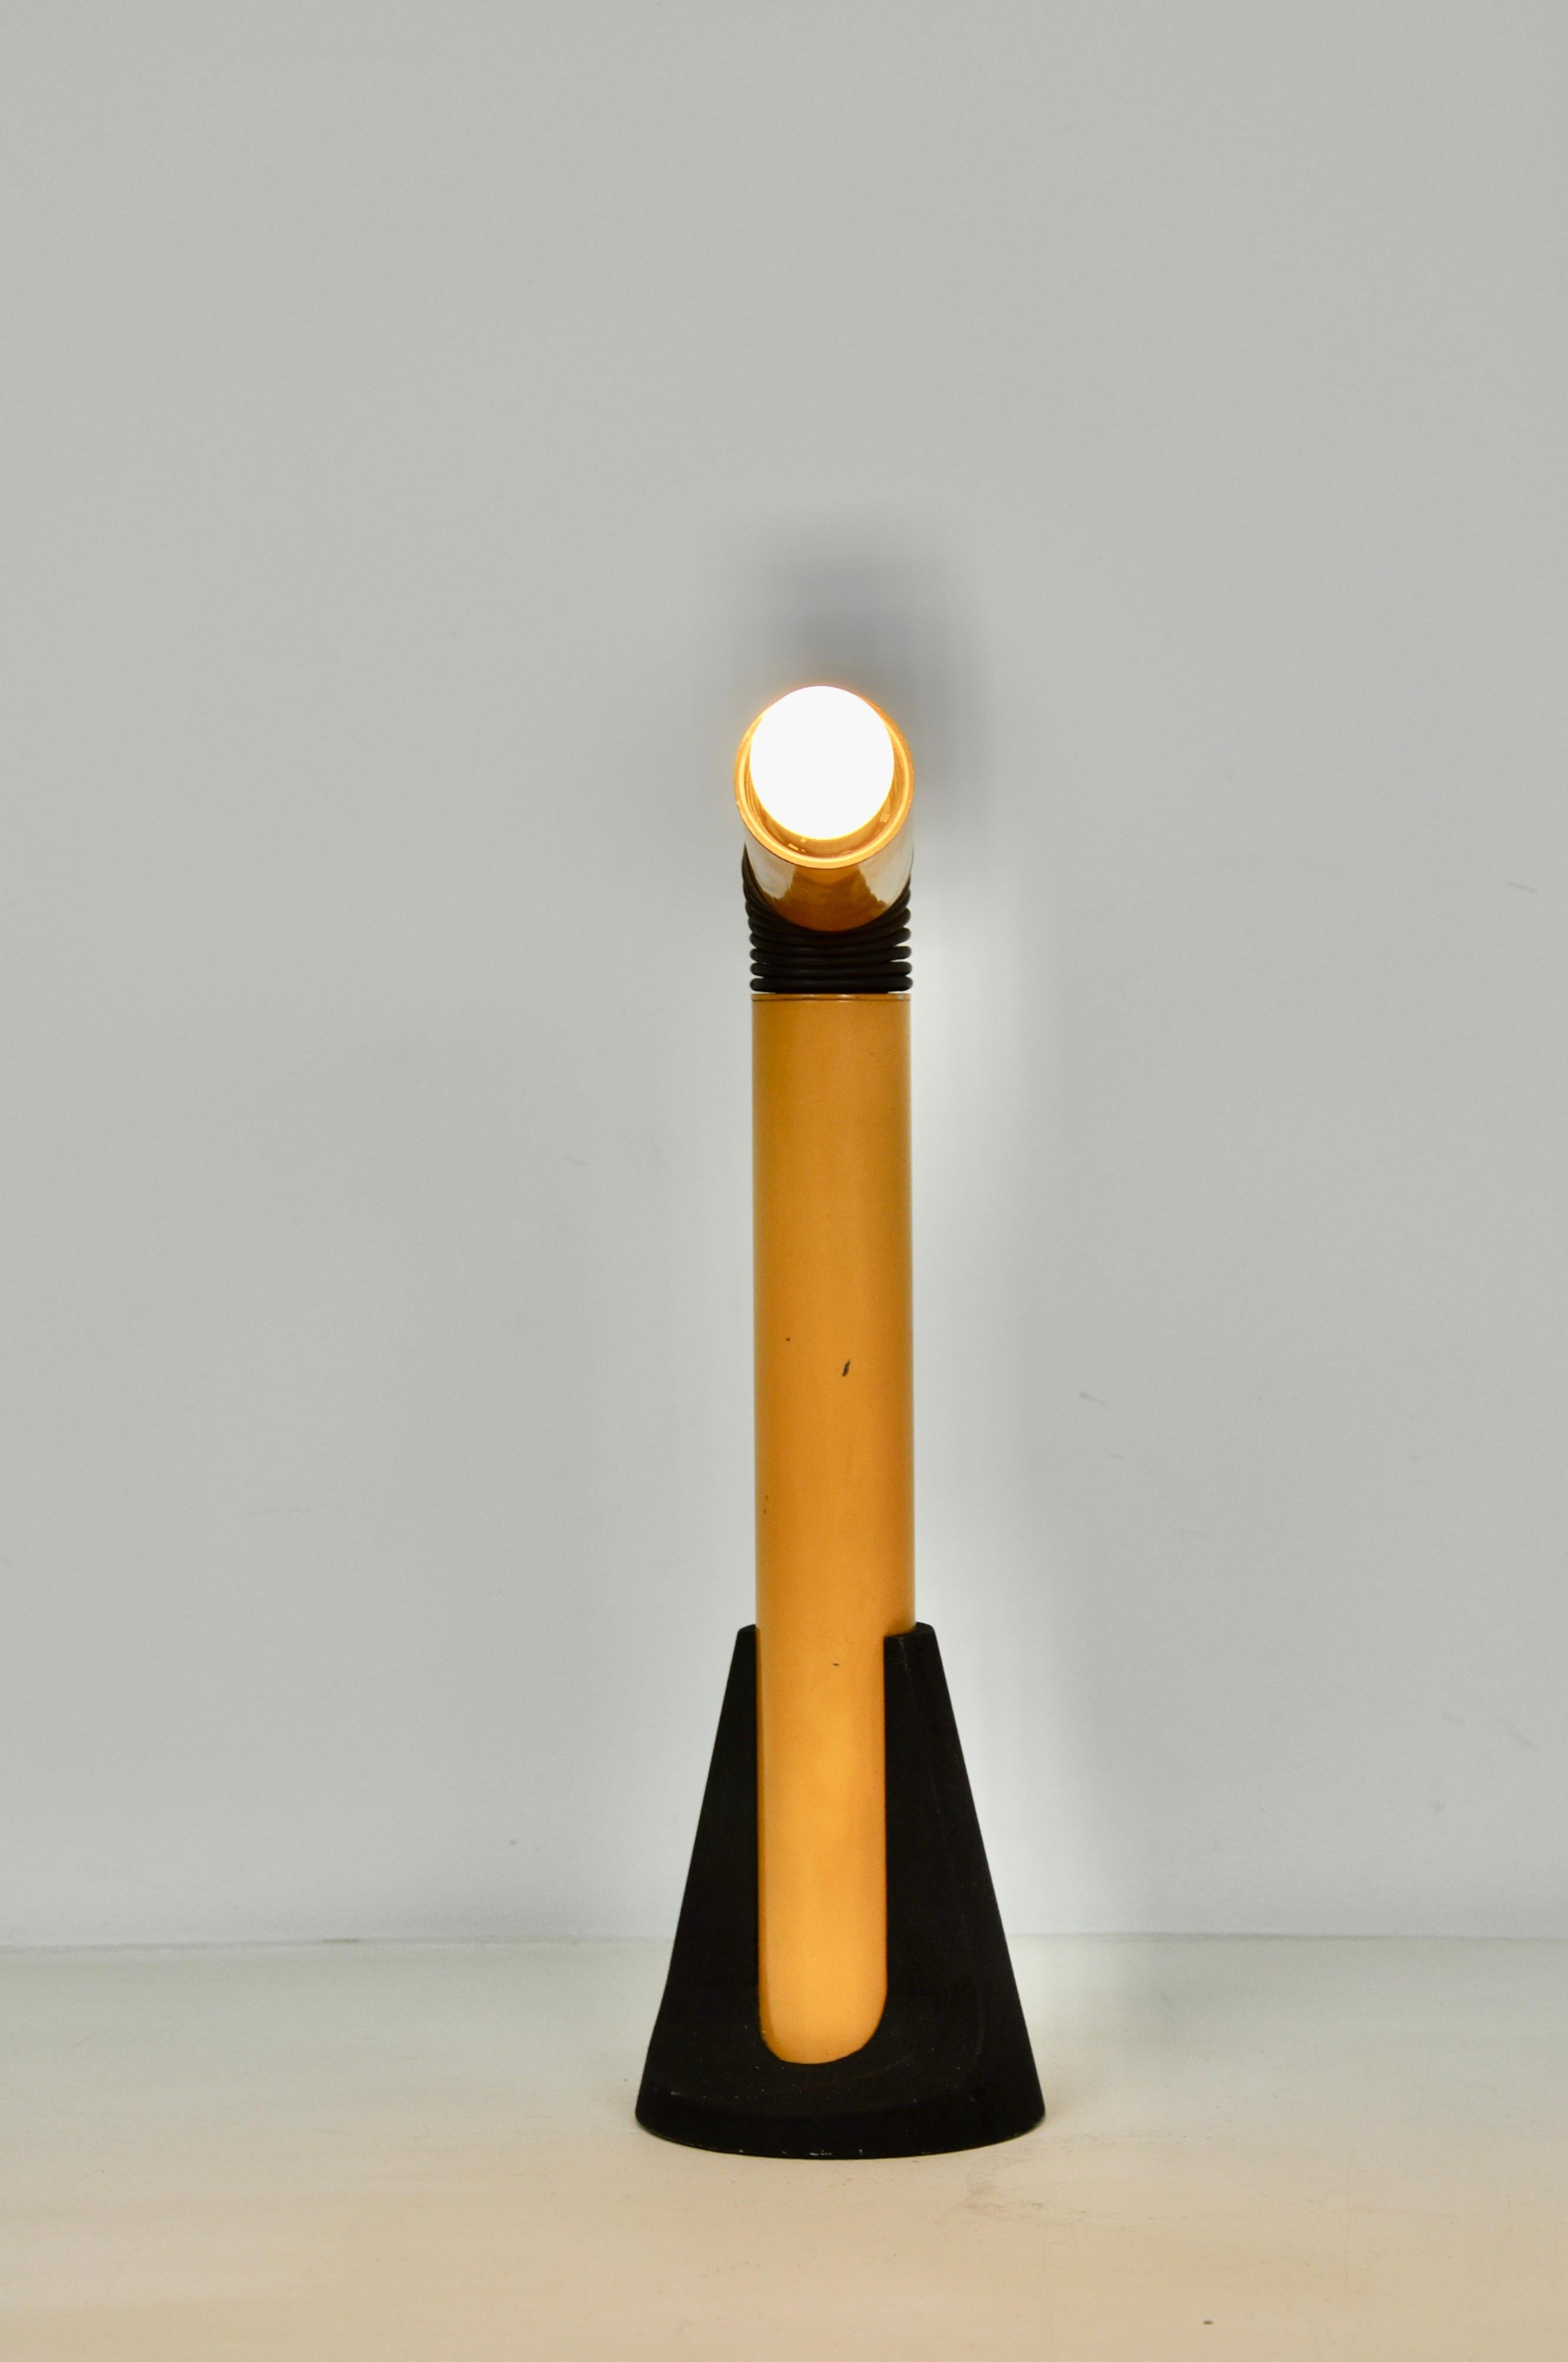 Italian Yellow Periscope Table Lamp by Danilo Aroldi for Stilnovo, 1960s For Sale